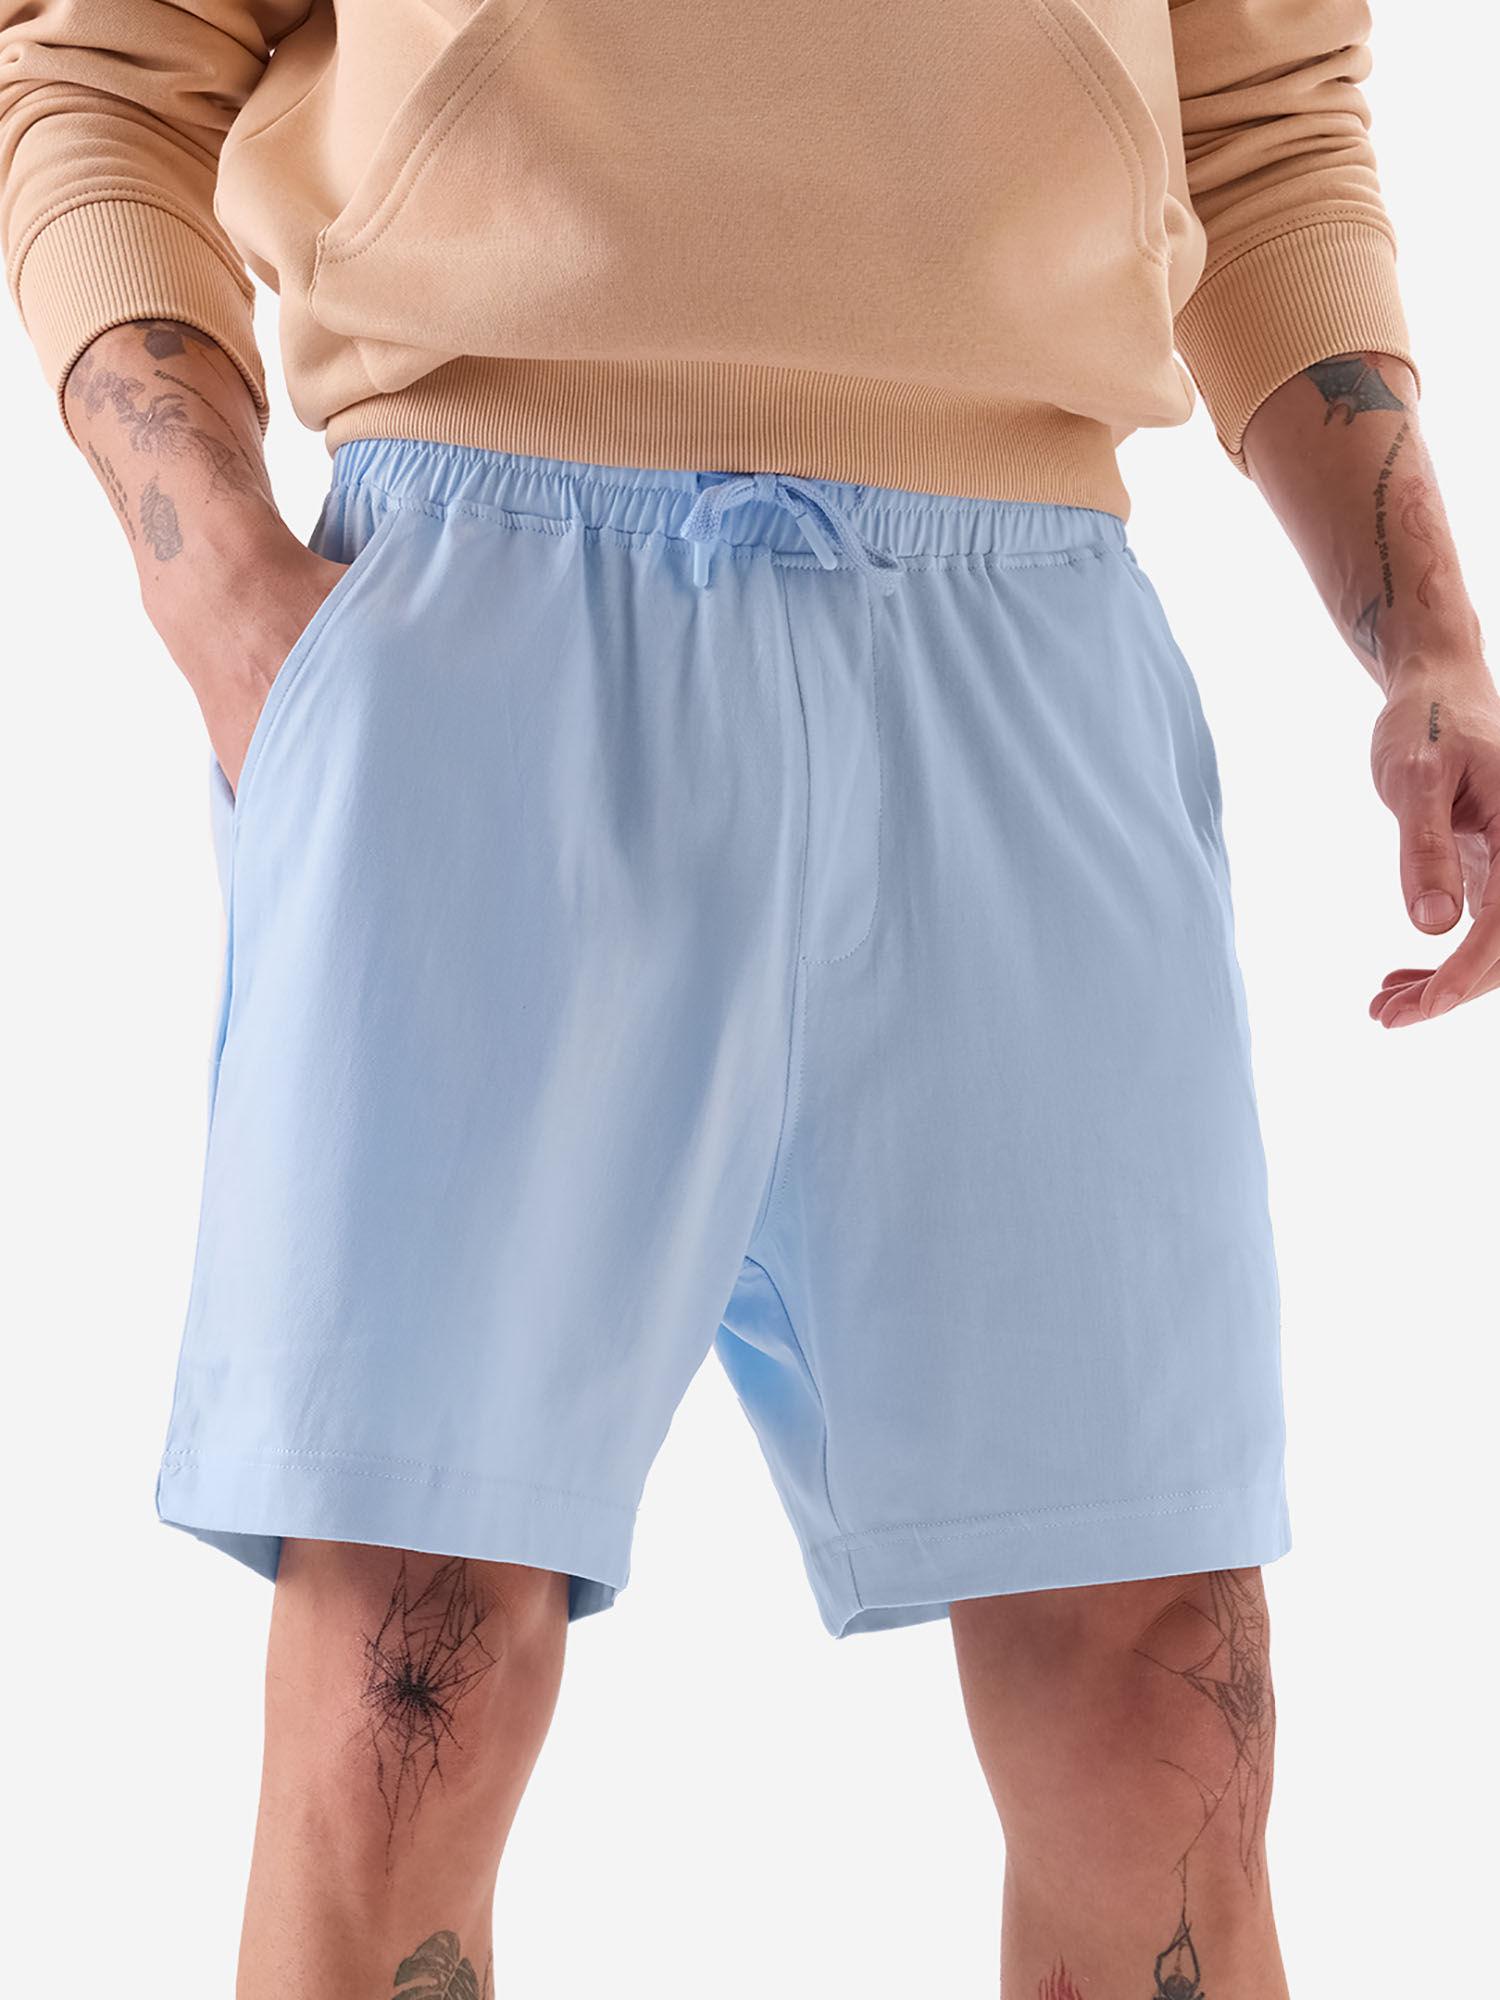 original home shorts : powder blue men home shorts